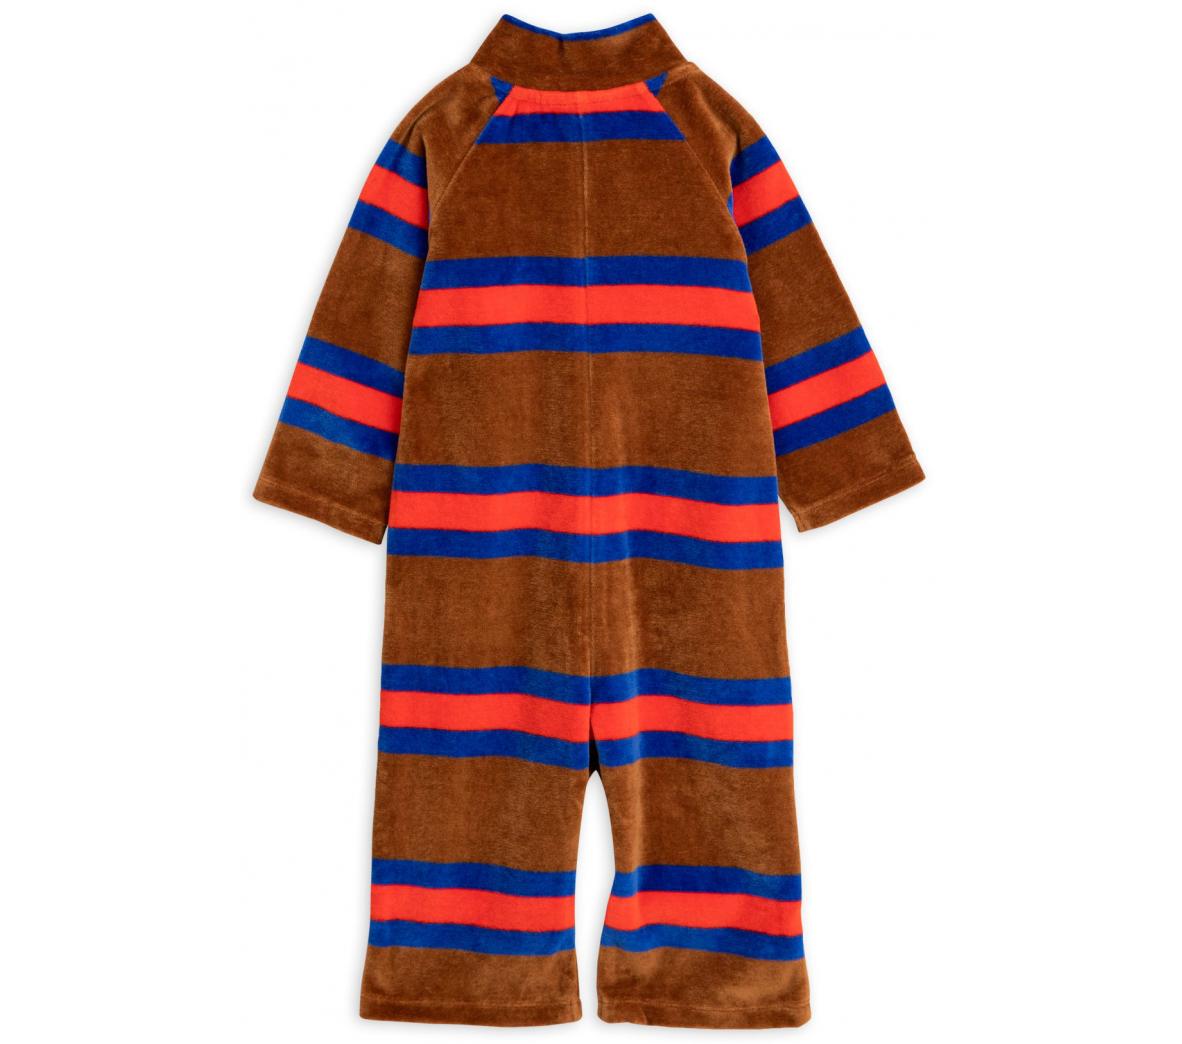 Velour stripe onesie - Cemarose Children's Fashion Boutique